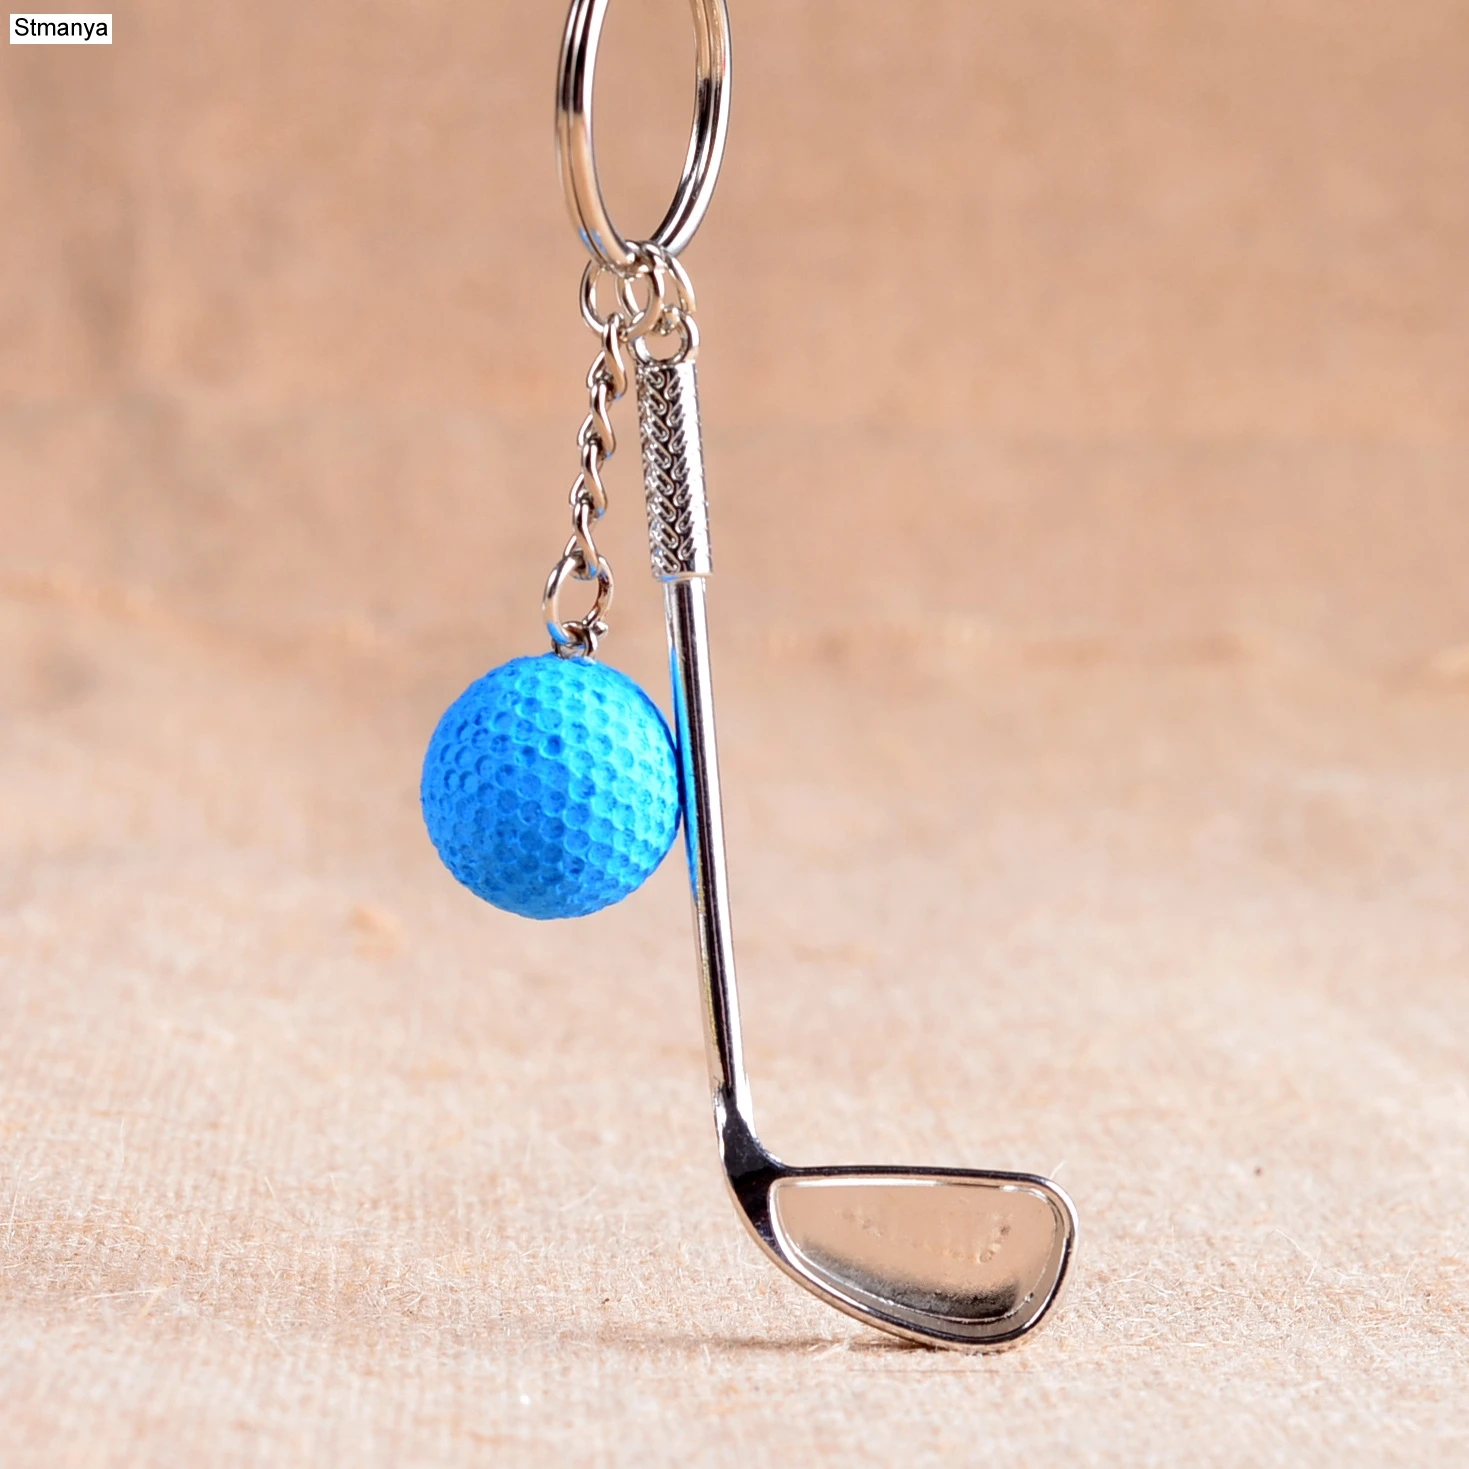 Porte-clé en métal argenté avec une balle et un club de golf